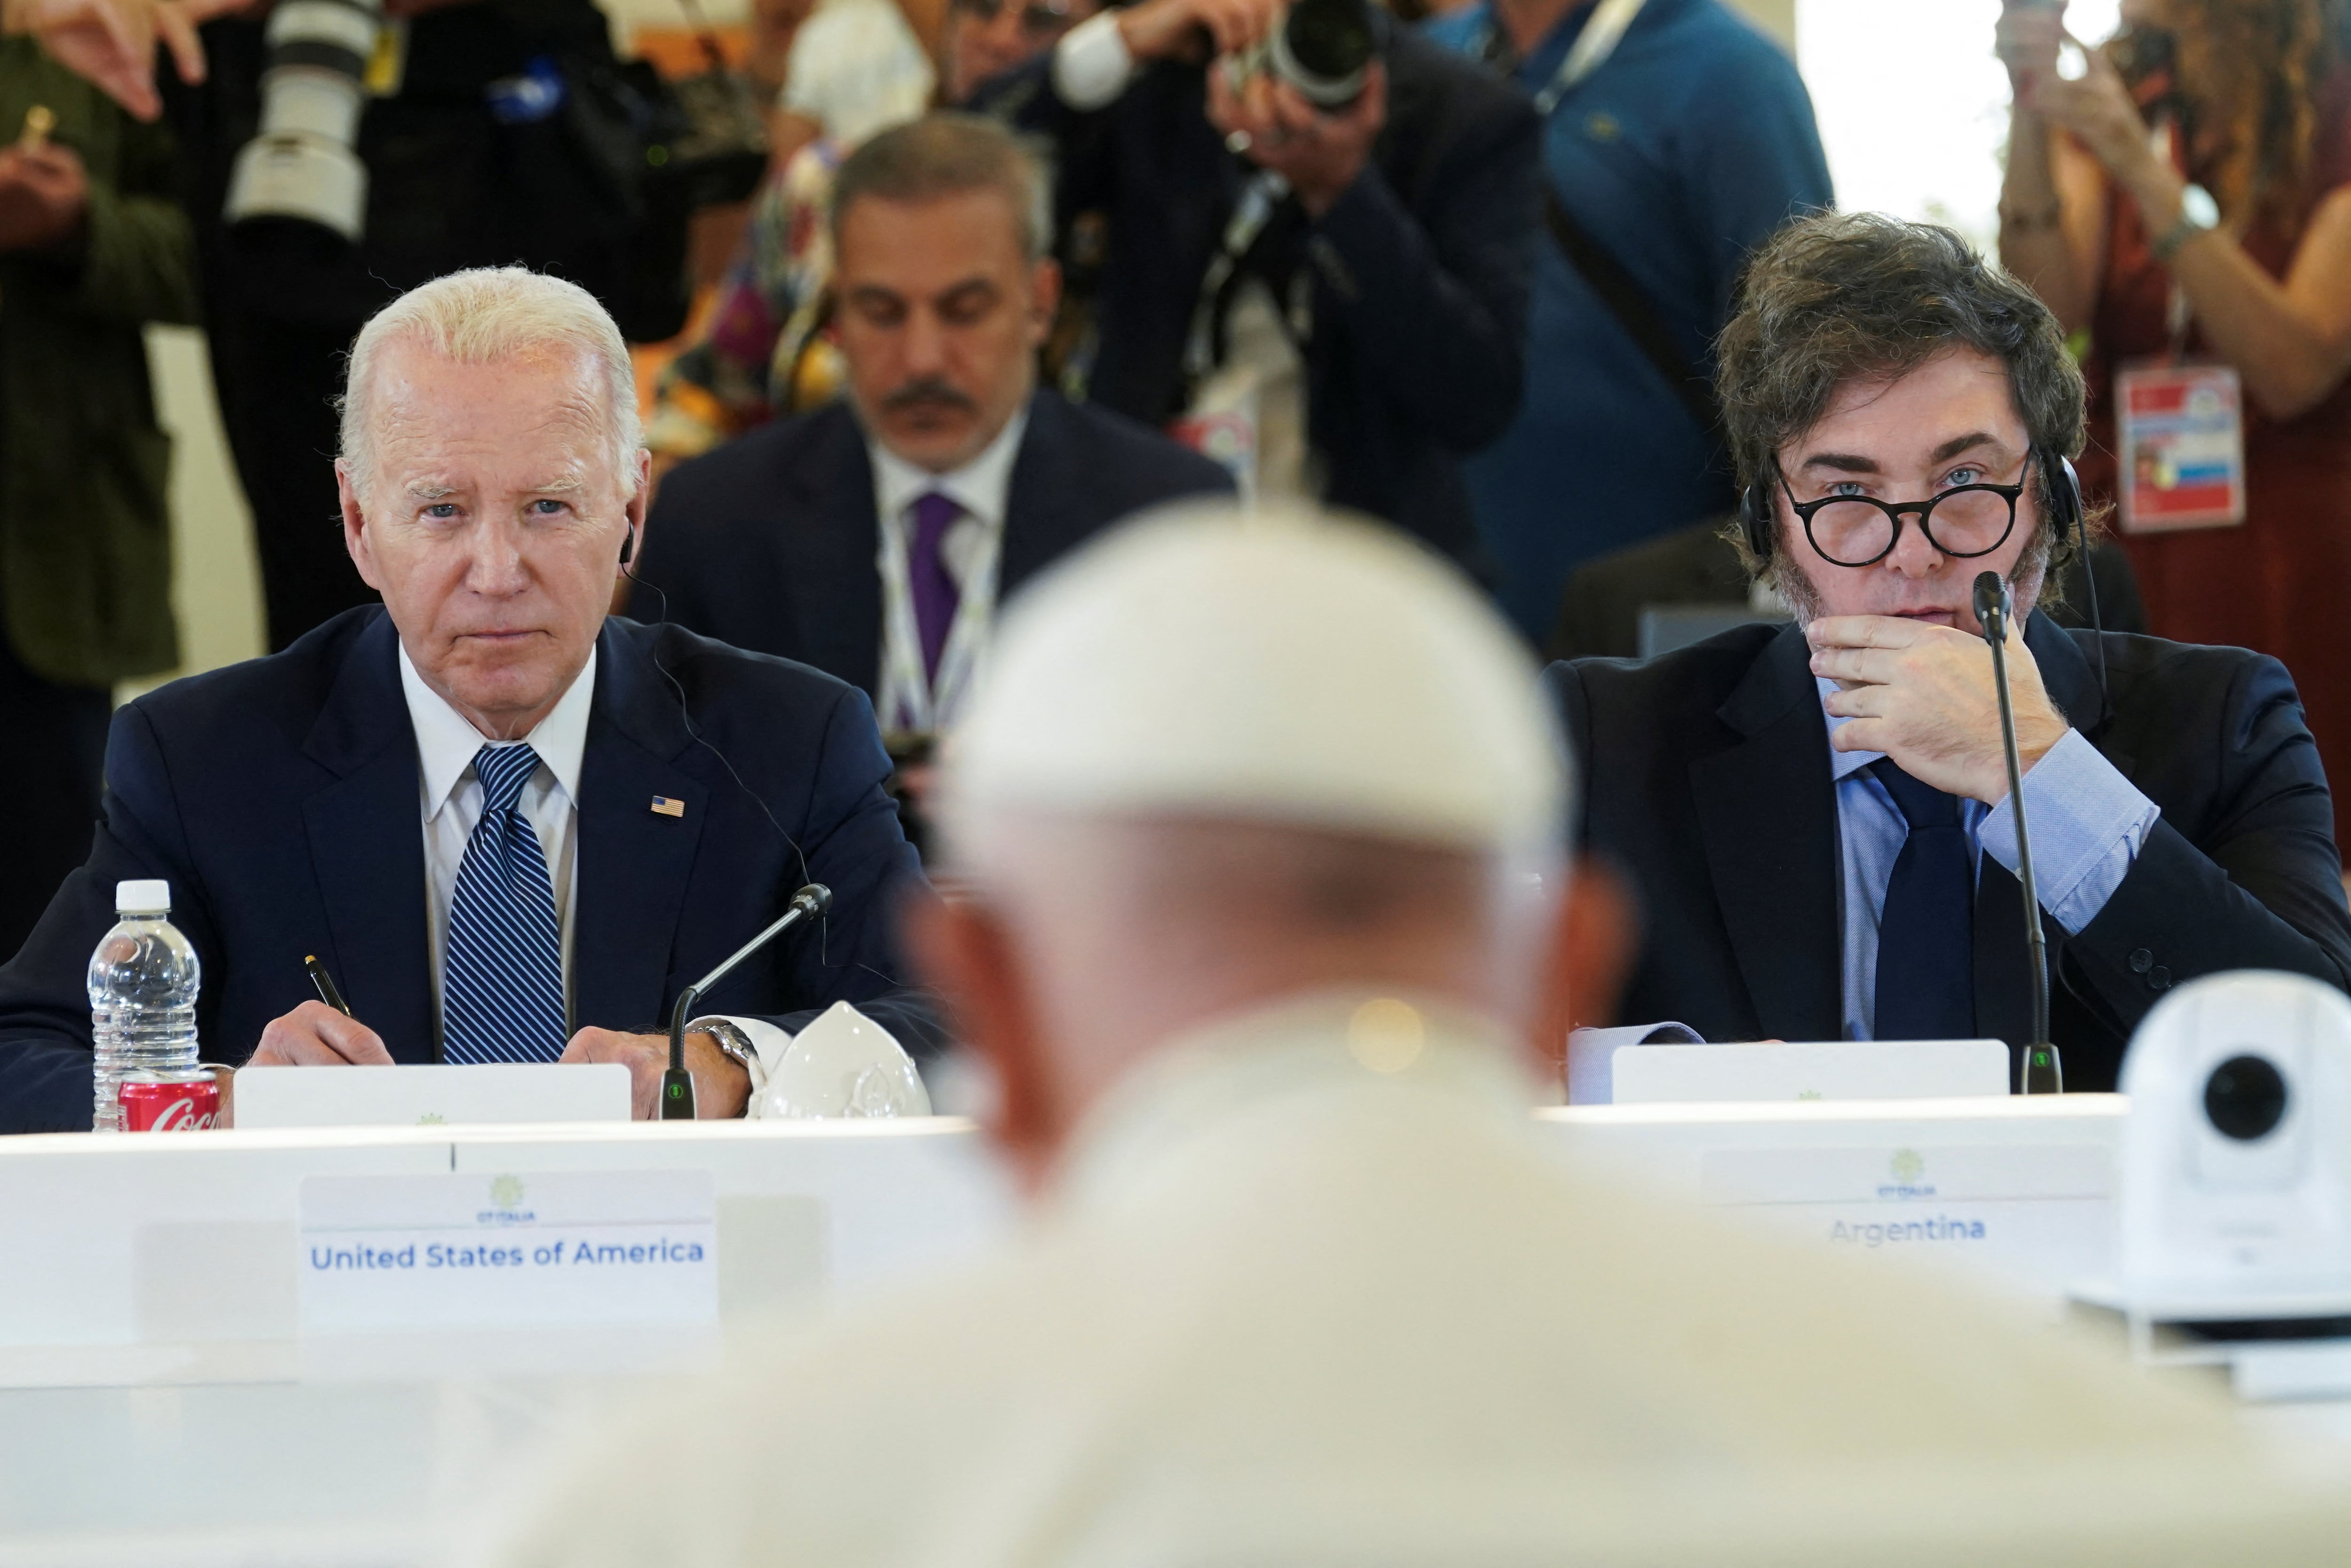 El presidente de los Estados Unidos, Joe Biden, y su par argentino, Javier Milei escuchan atentamente al papa Francisco durante el G7 que se realiza en Italia (Foto: Reuters / Kevin Lamarque)